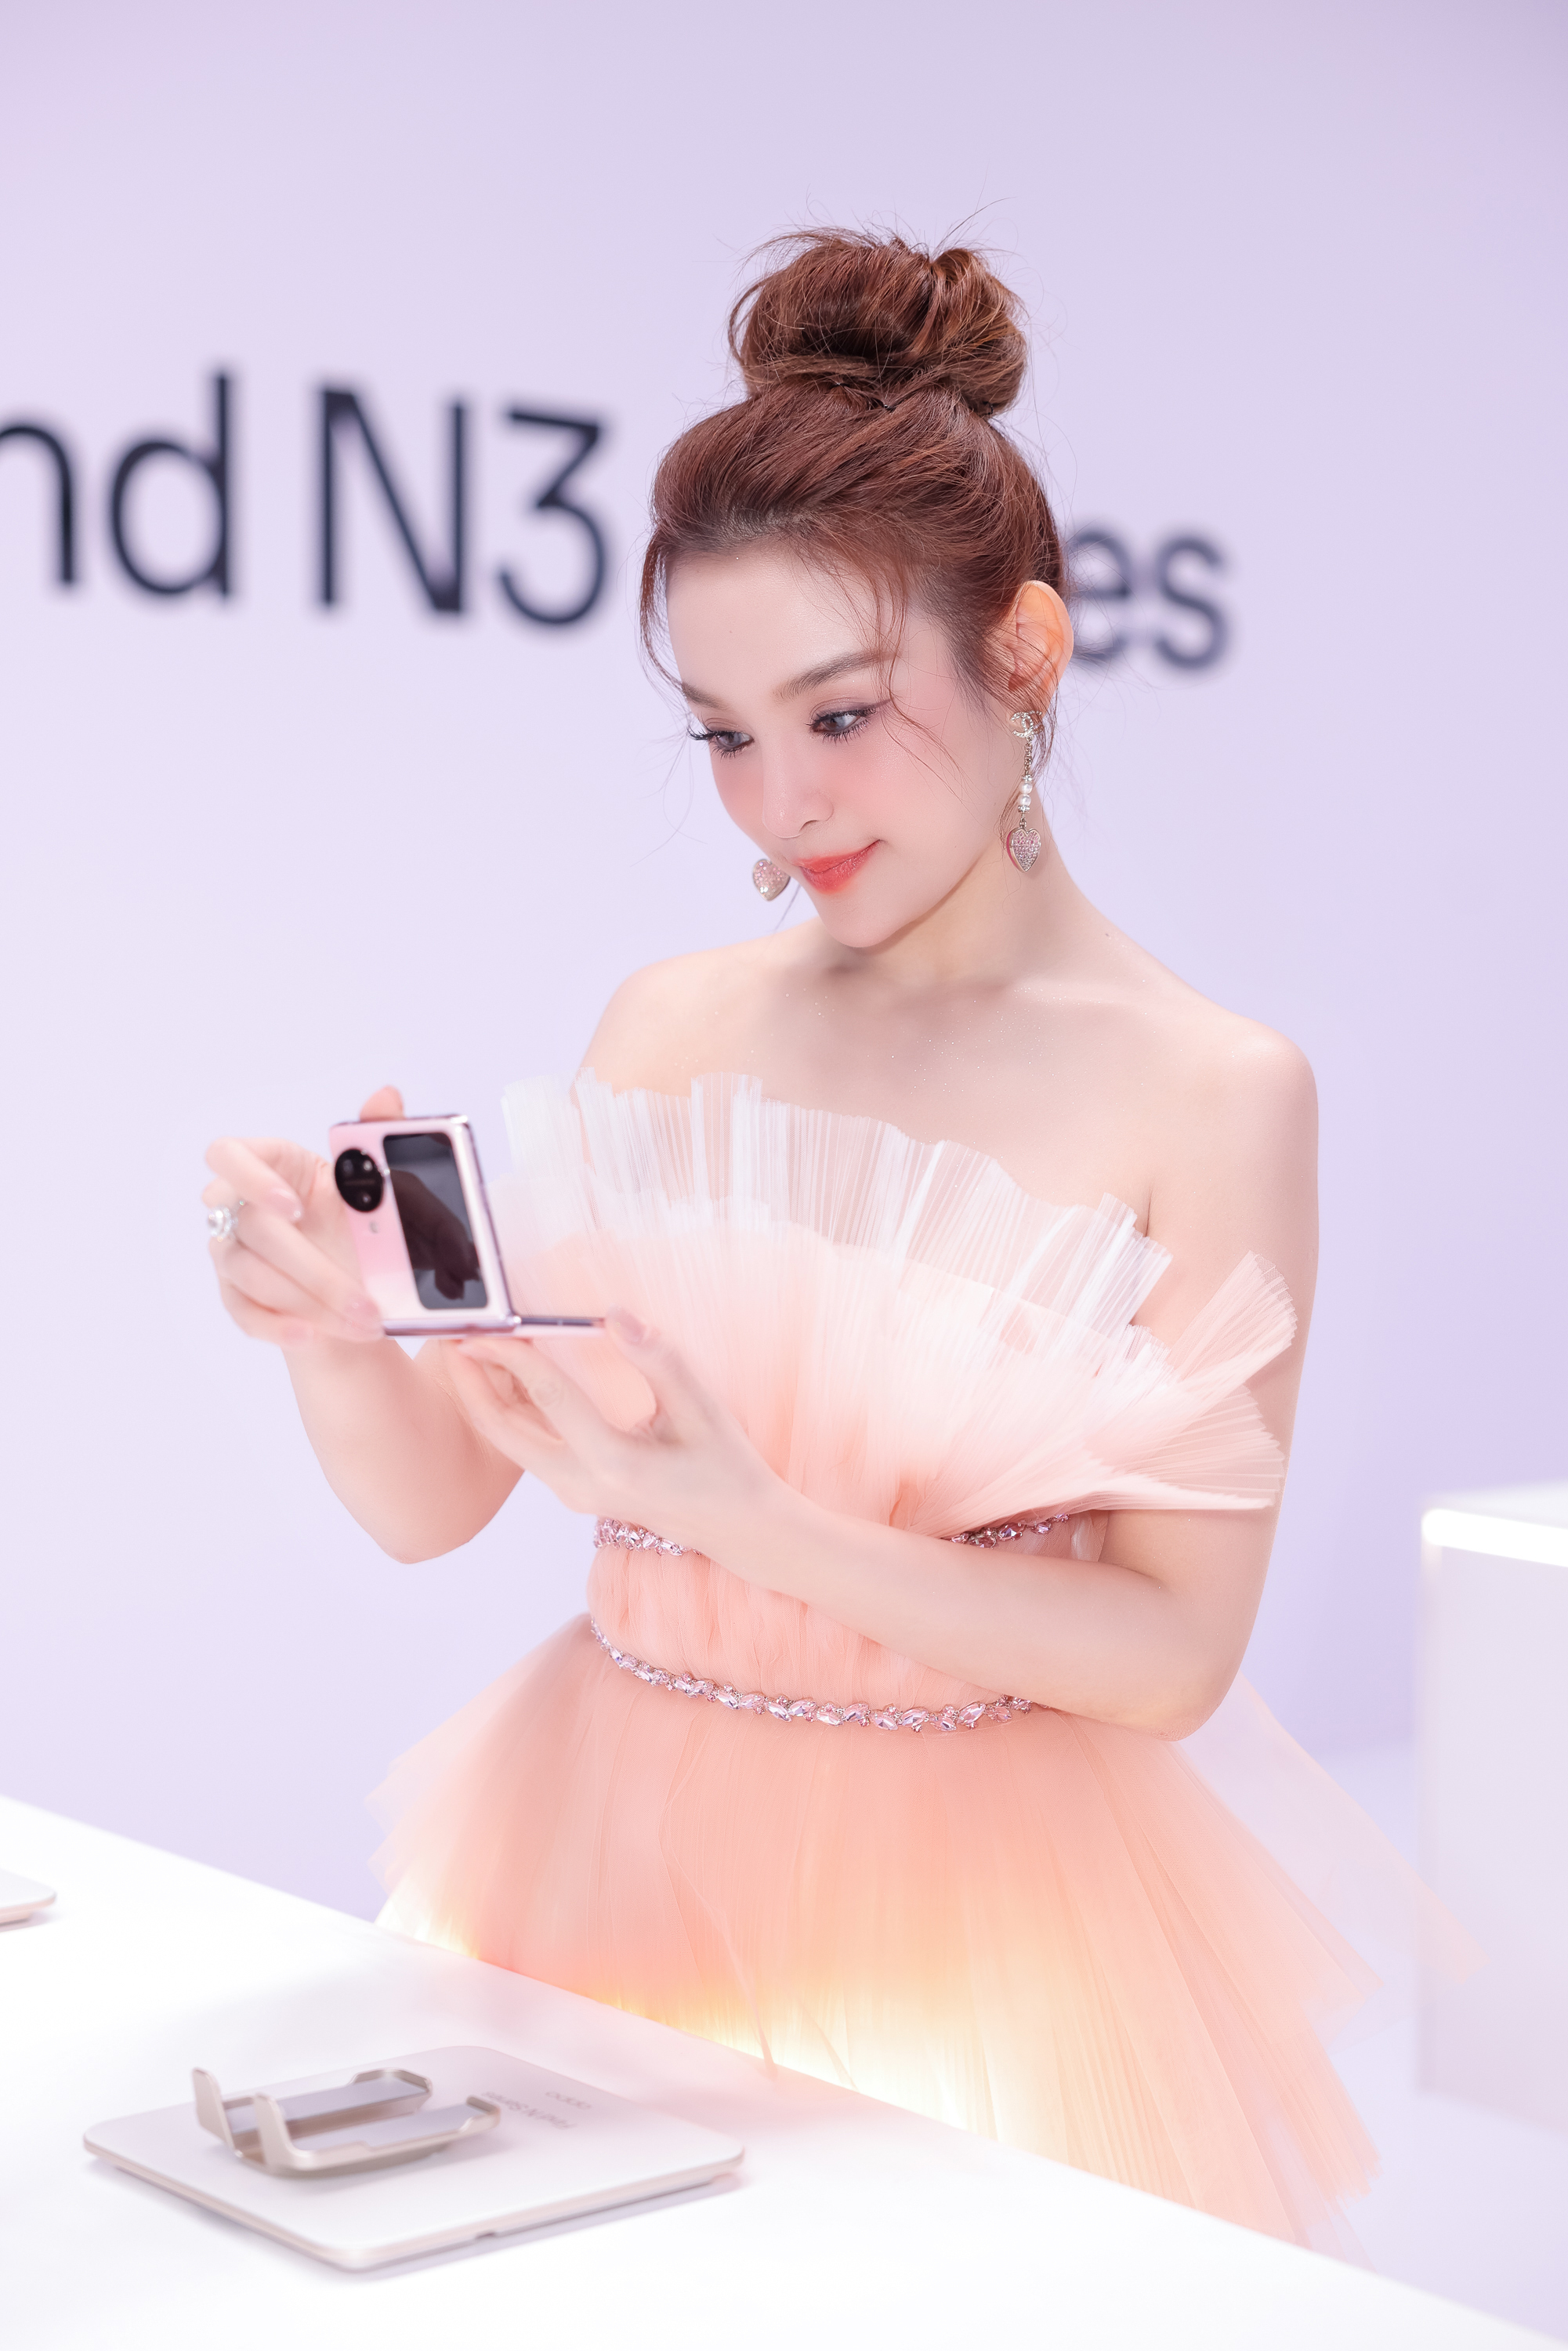 OPPO Find N3 Flip ra mắt tại Việt Nam: bộ ba camera đầu tiên, màn hình ngoài hữu dụng, giá 23 triệu